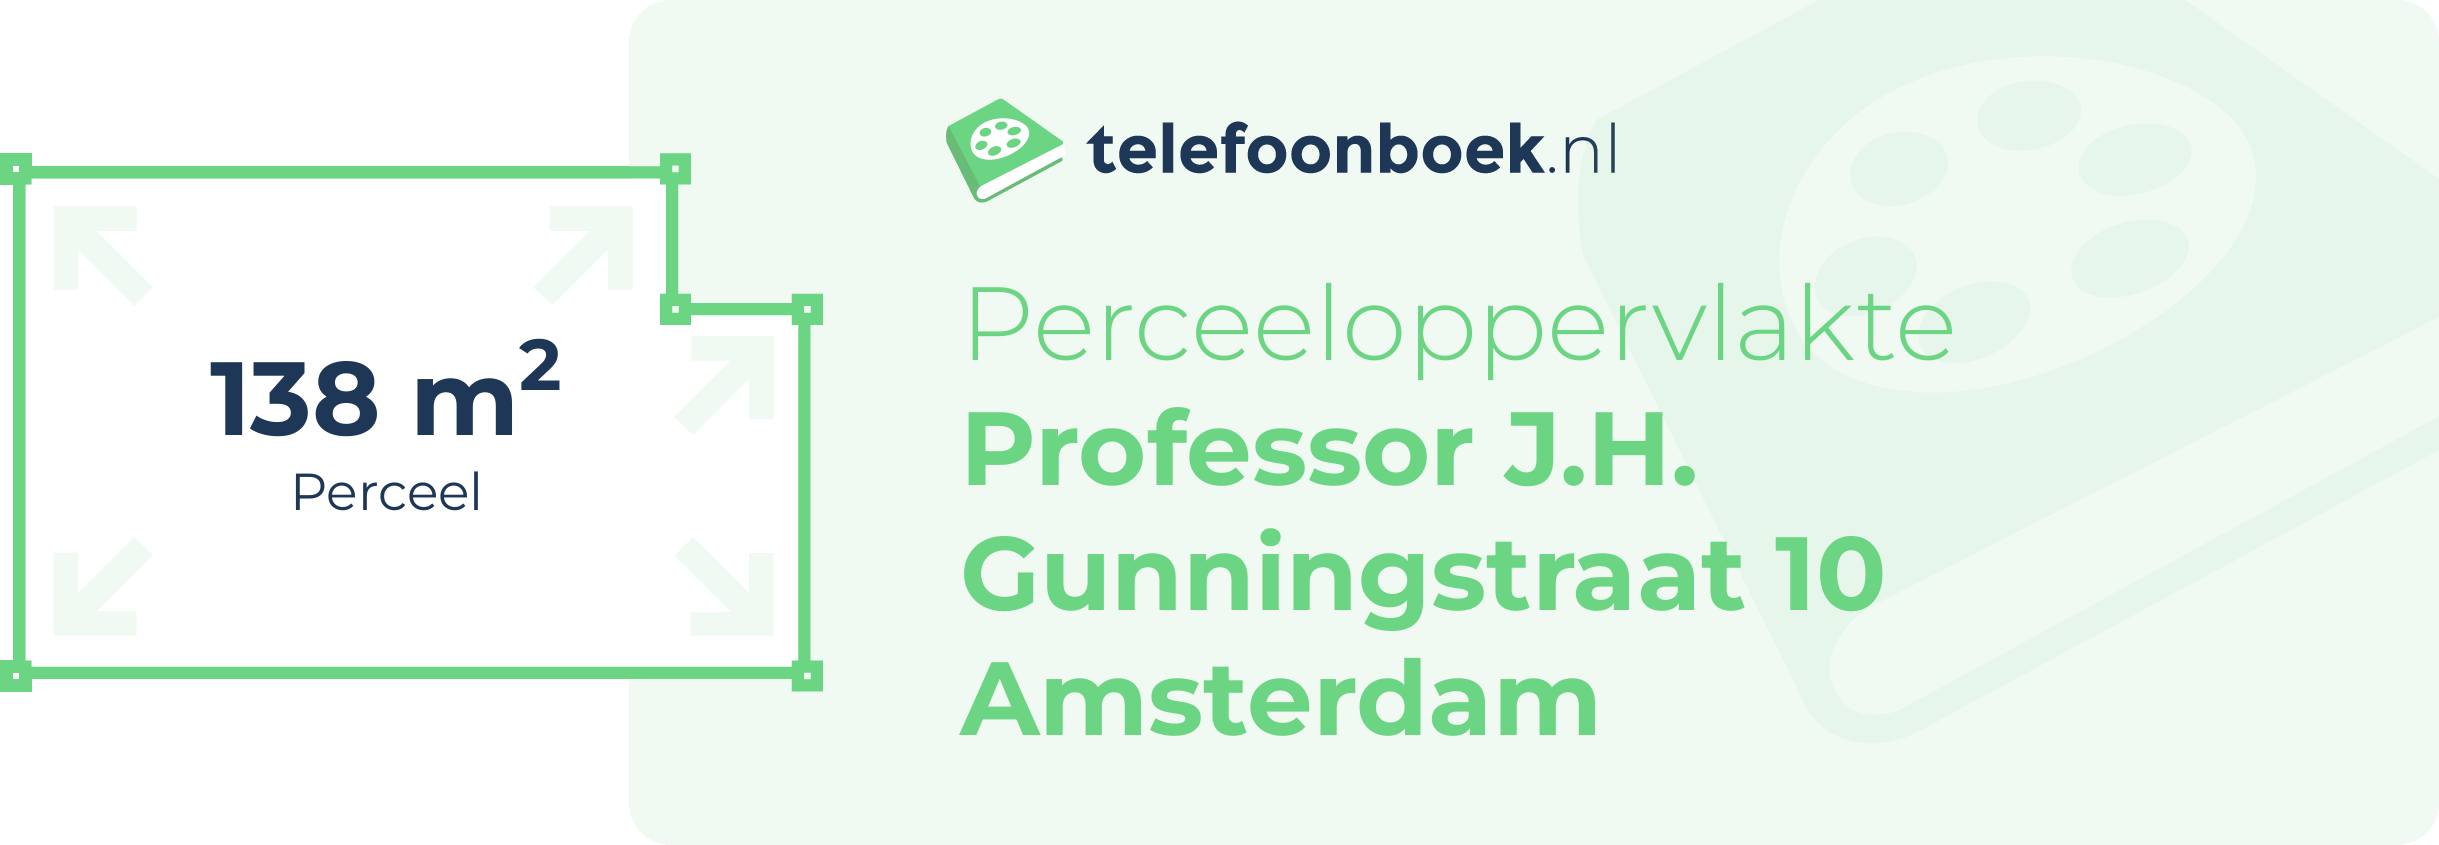 Perceeloppervlakte Professor J.H. Gunningstraat 10 Amsterdam